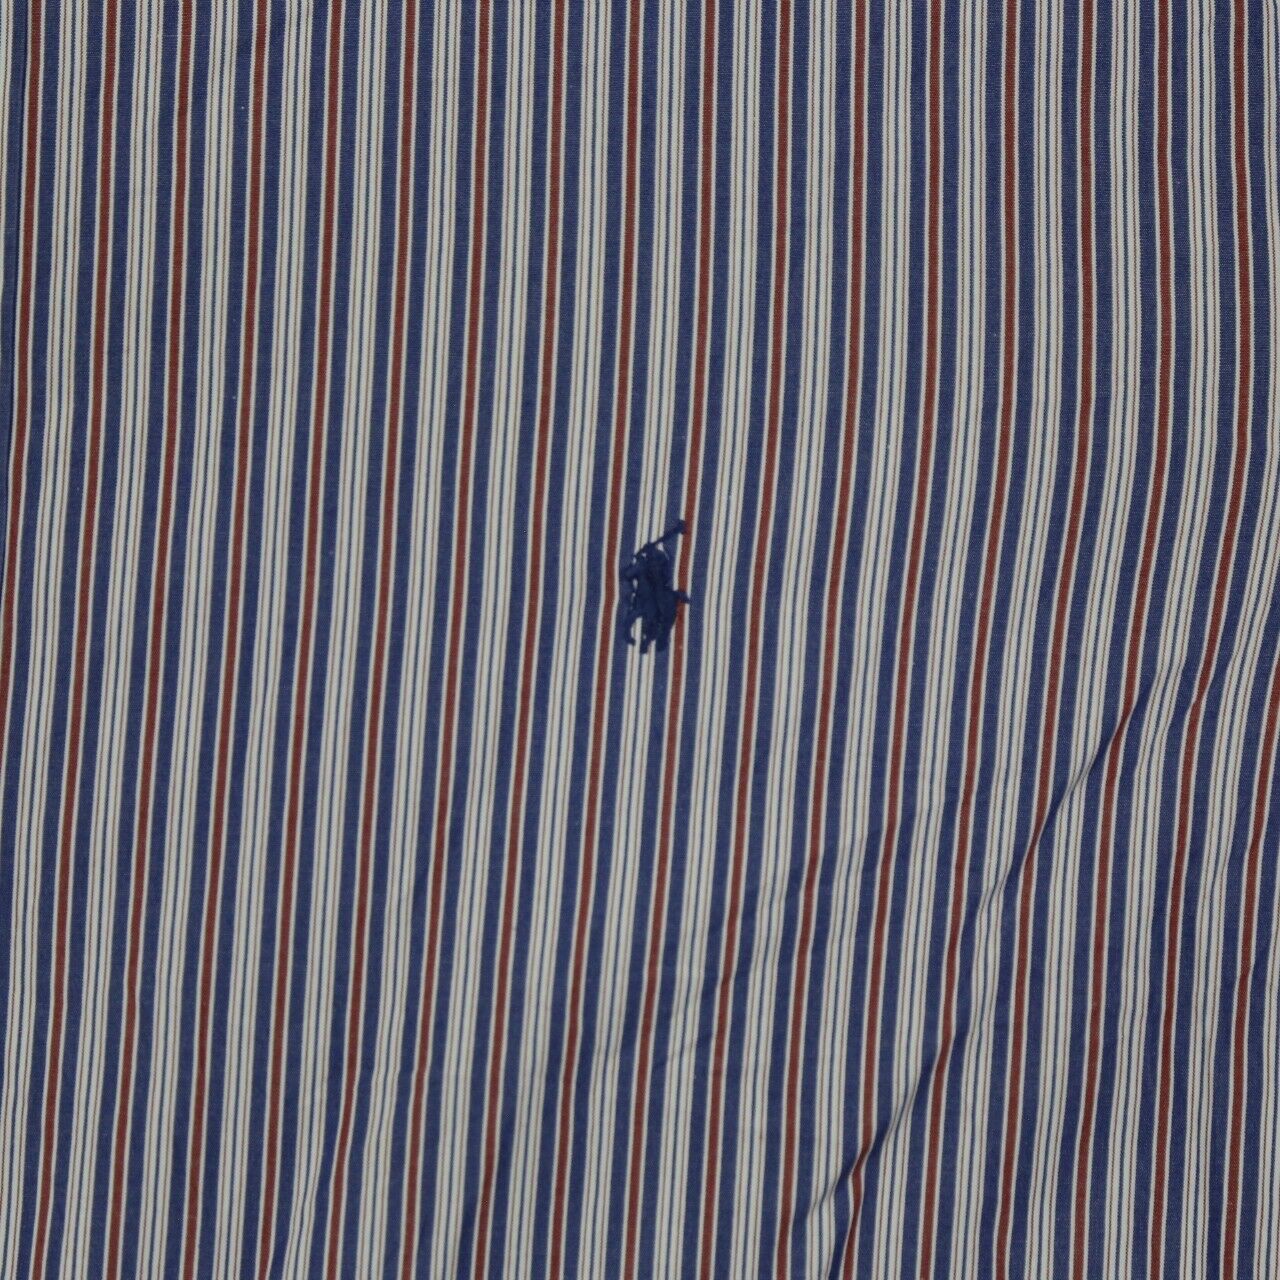 Ralph Lauren Button Down Shirt Mens Size Tall 3LT Blue White Striped Logo Shirt